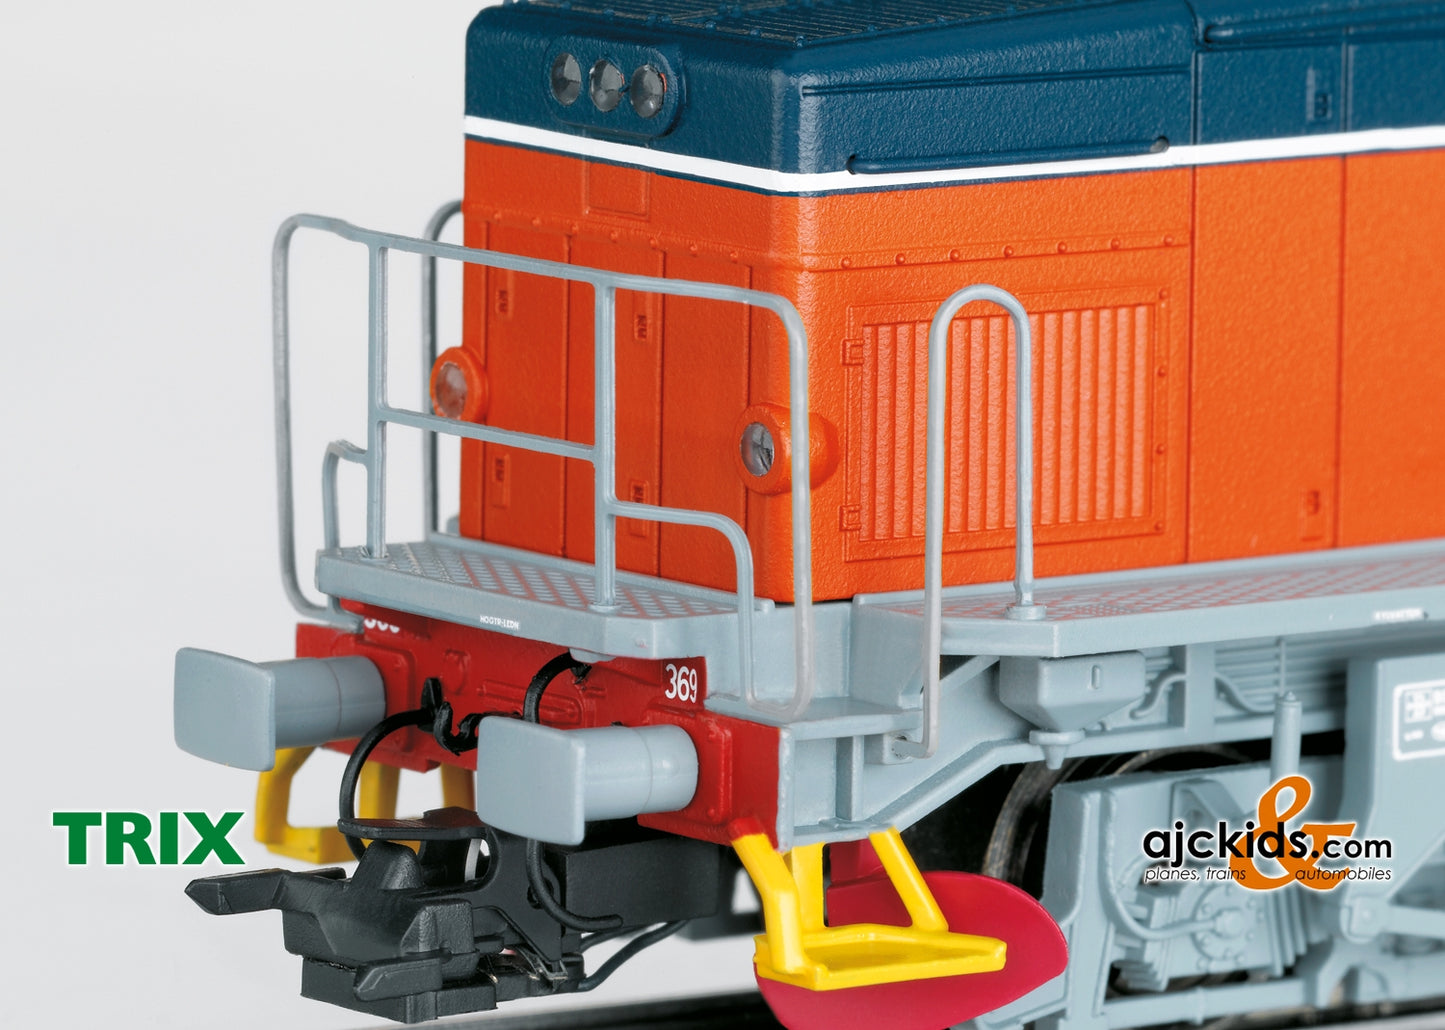 Trix 25945 - Class T44 Heavy Diesel Locomotive